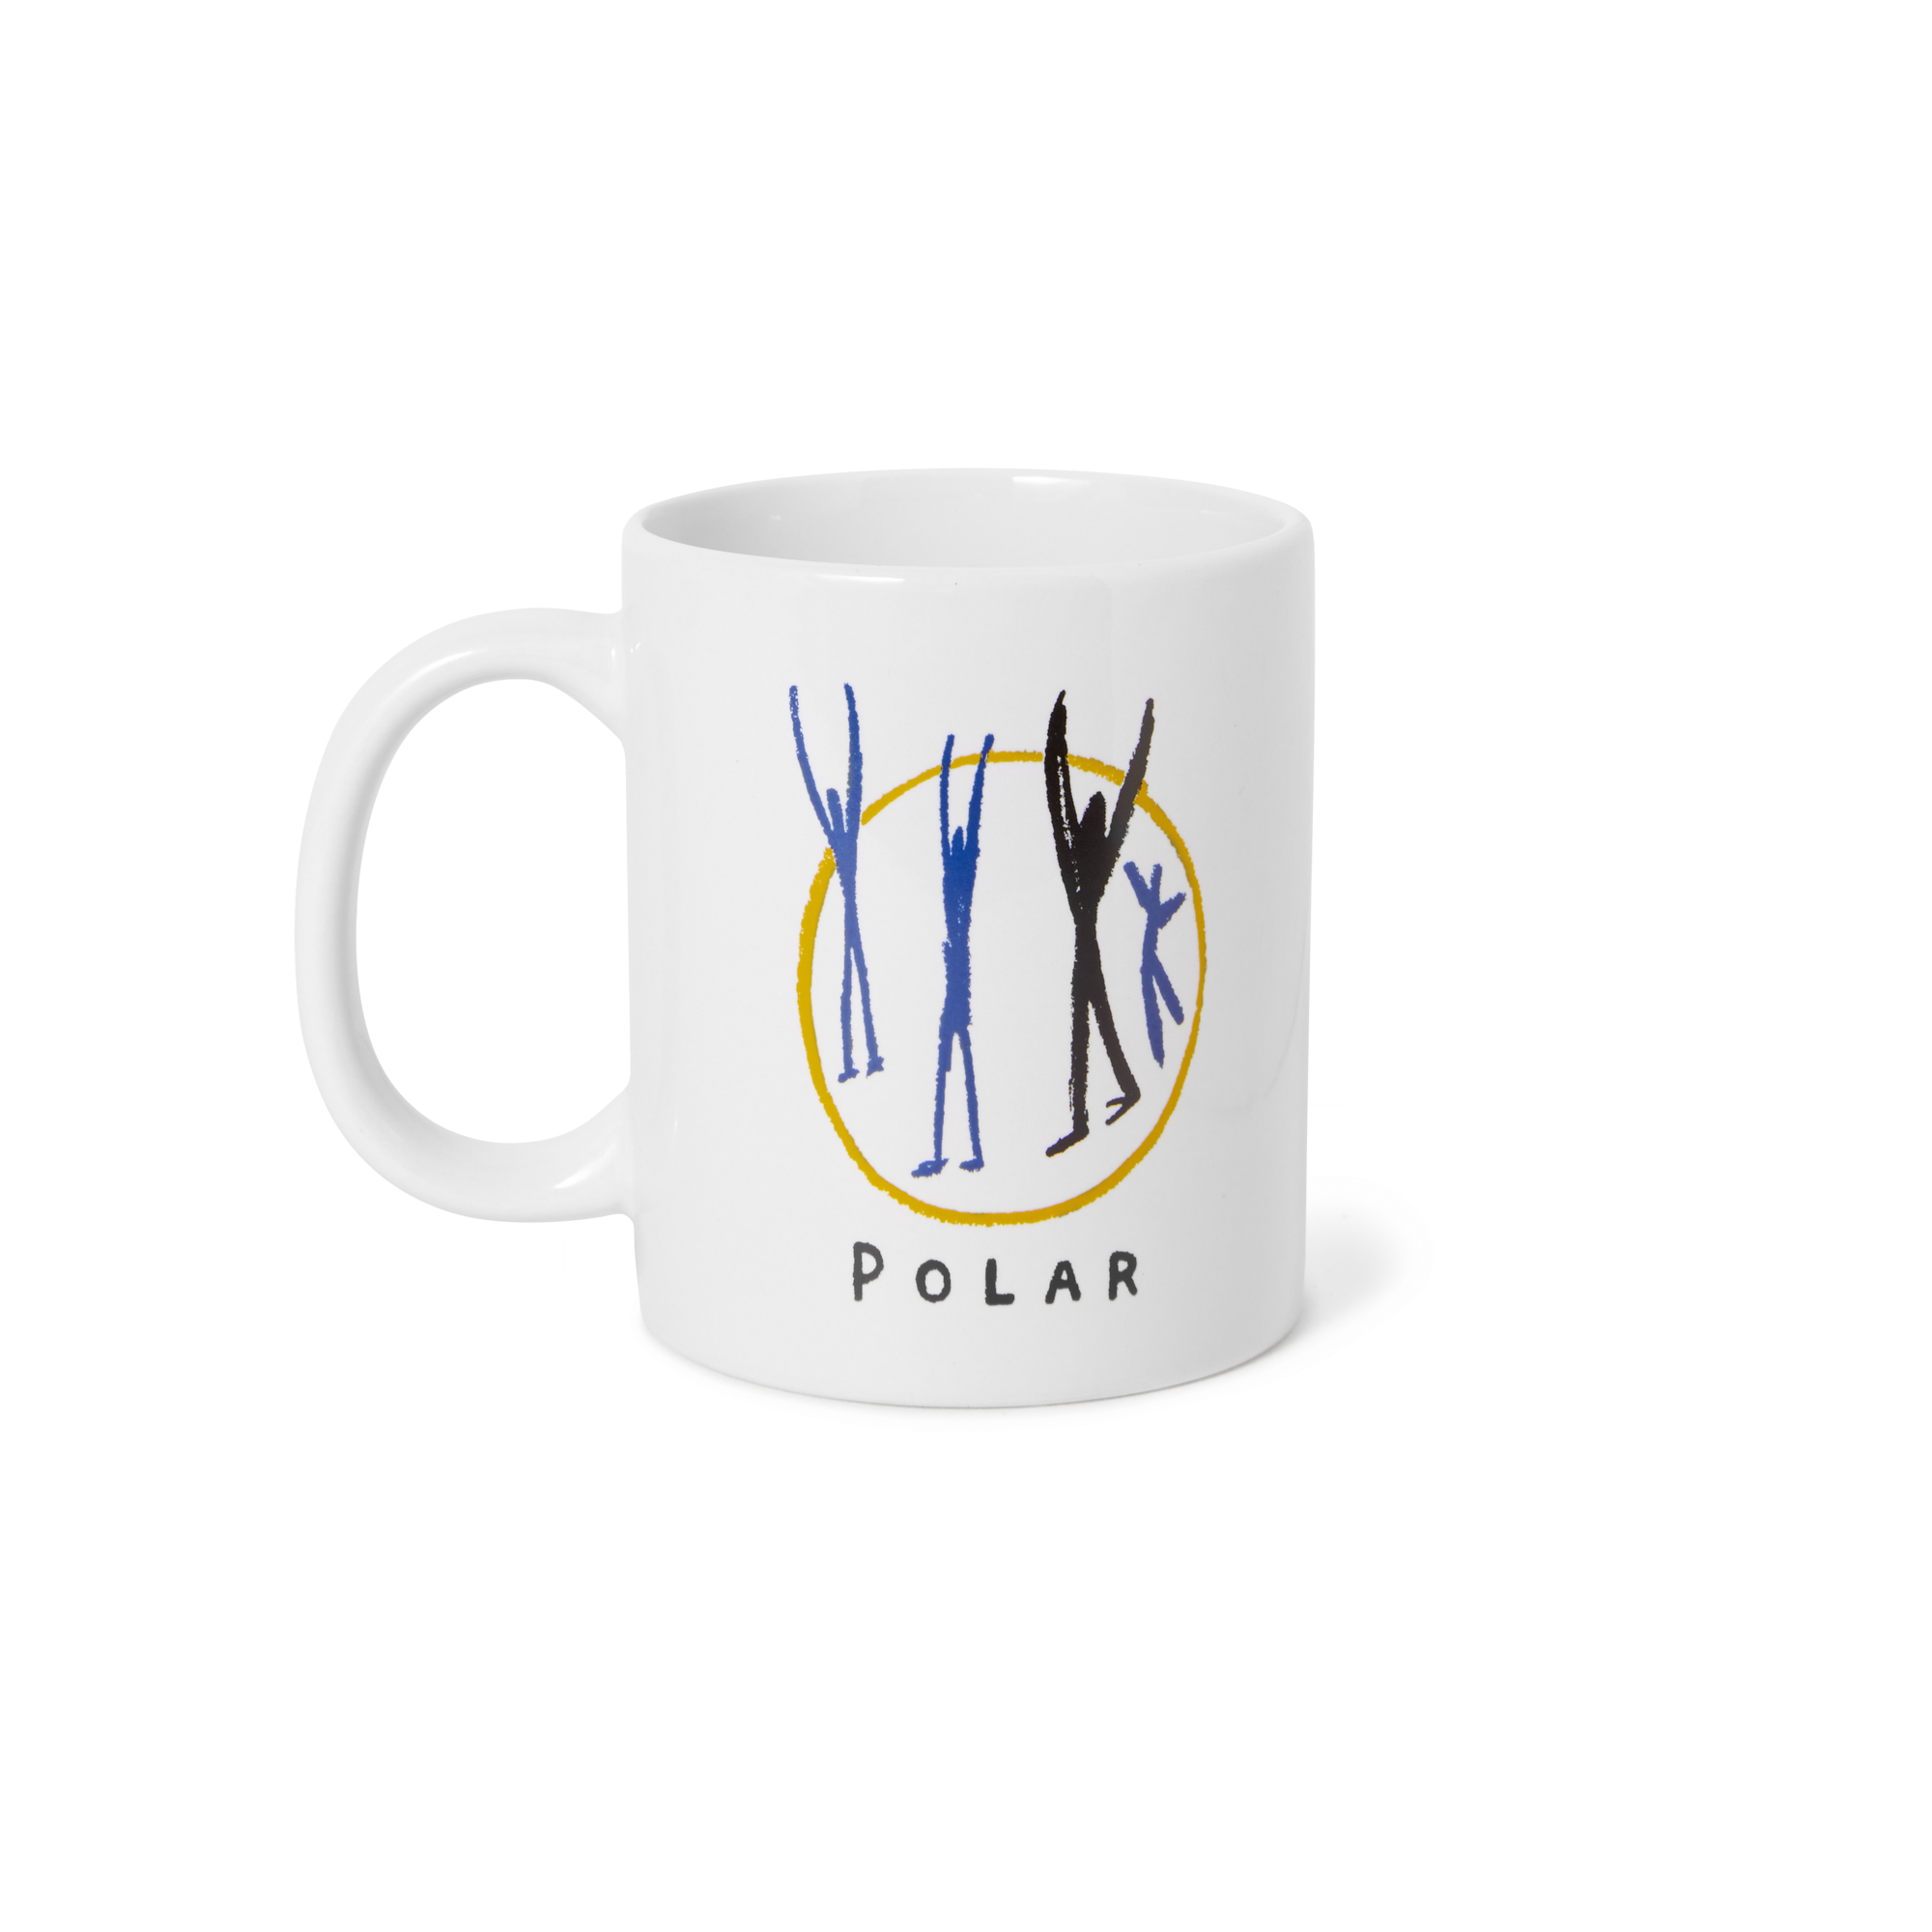 POLAR - Polar Gang Mug  "White"